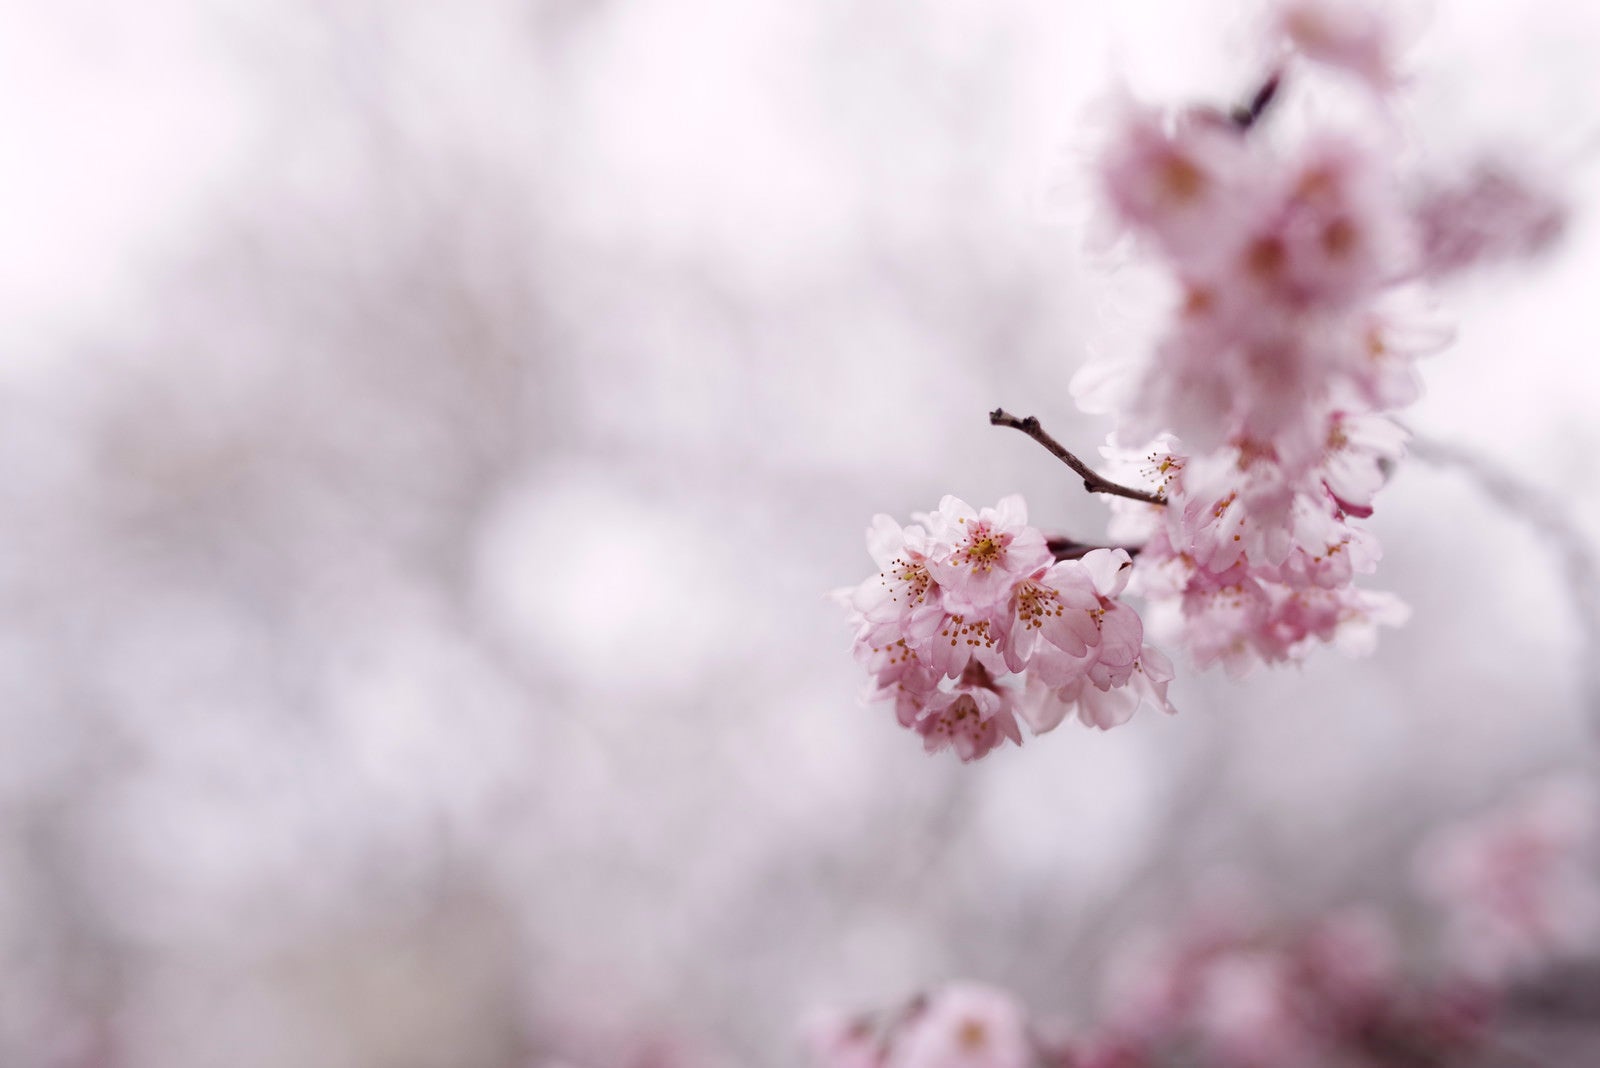 「寒空の下で咲く彼岸桜」の写真